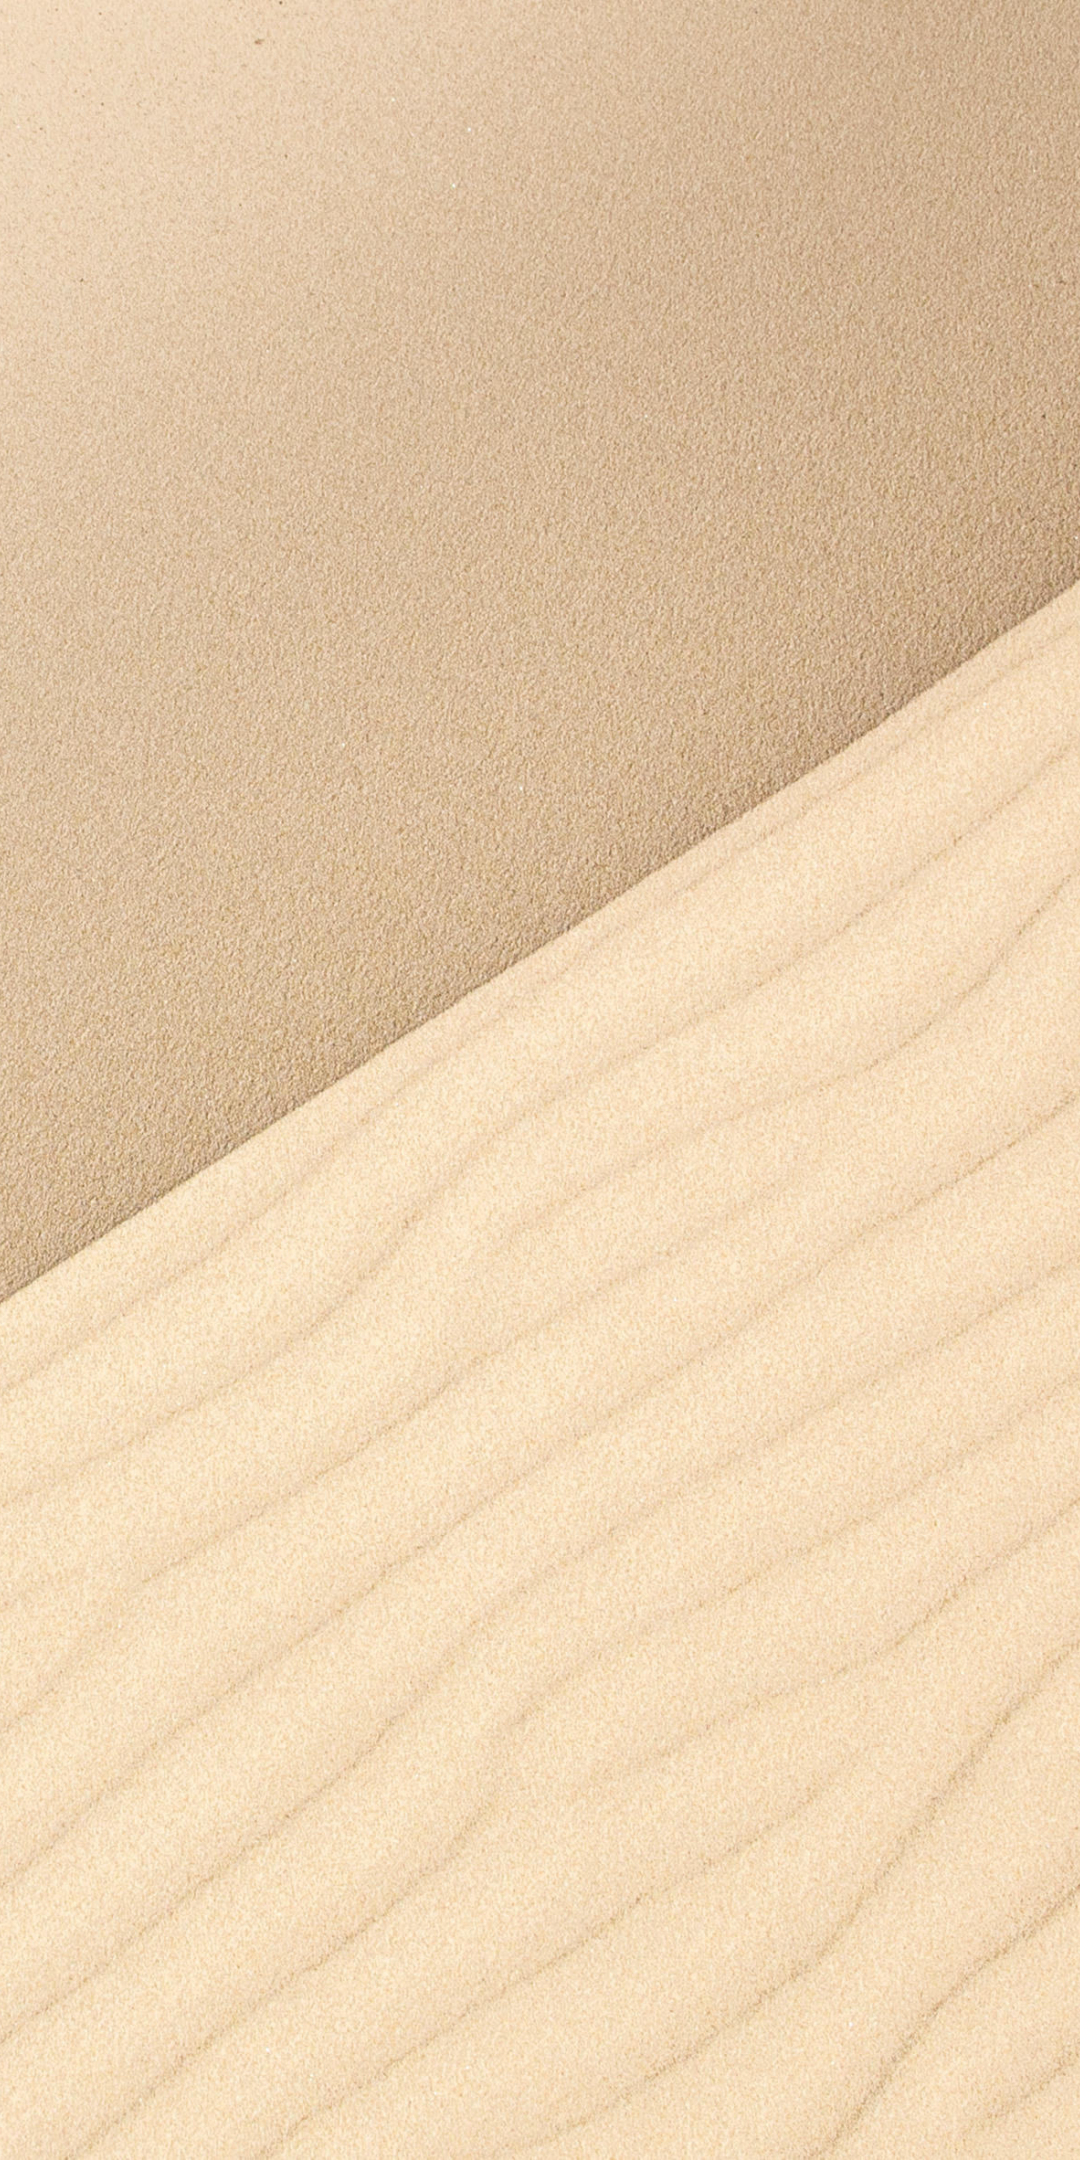 Sand, dunes, desert, 1080x2160 wallpaper